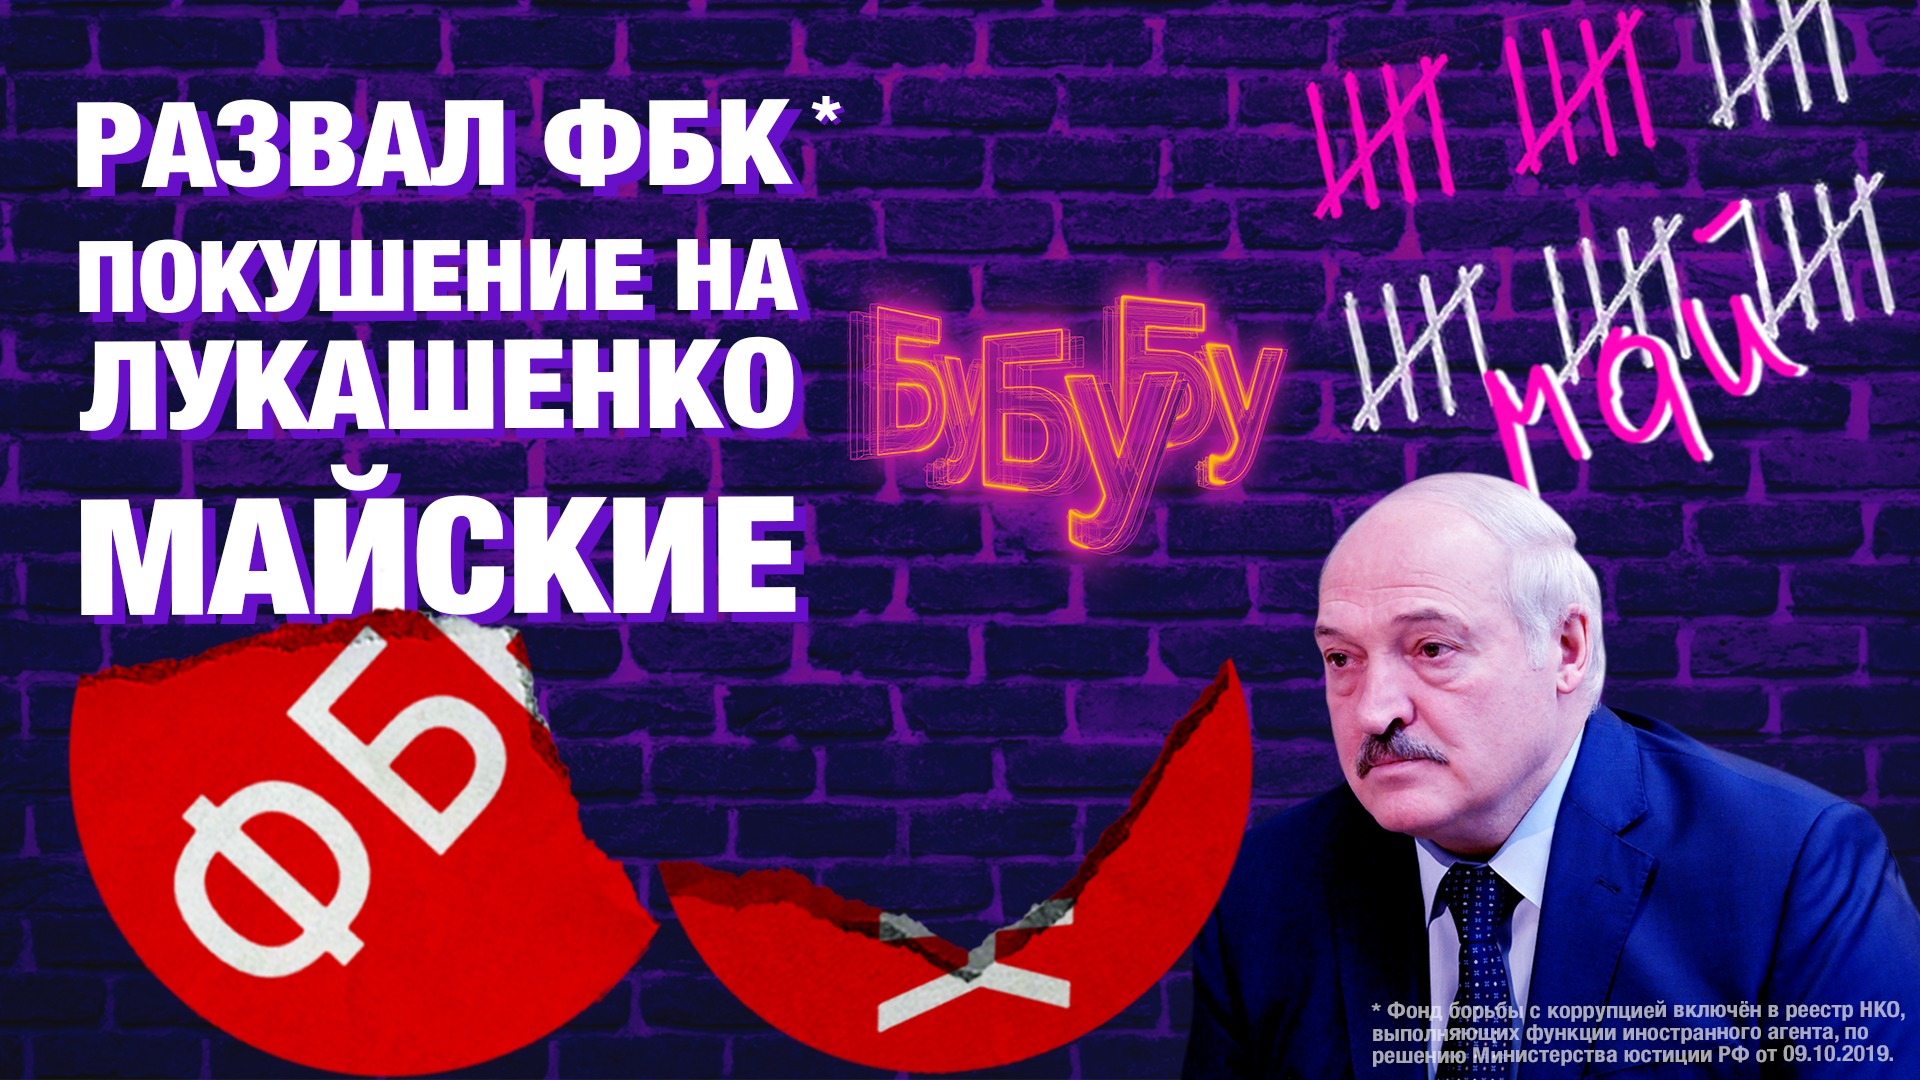 ФБК Навального вне закона. Покушение на Лукашенко и другие новости Белоруссии. Длинные майские